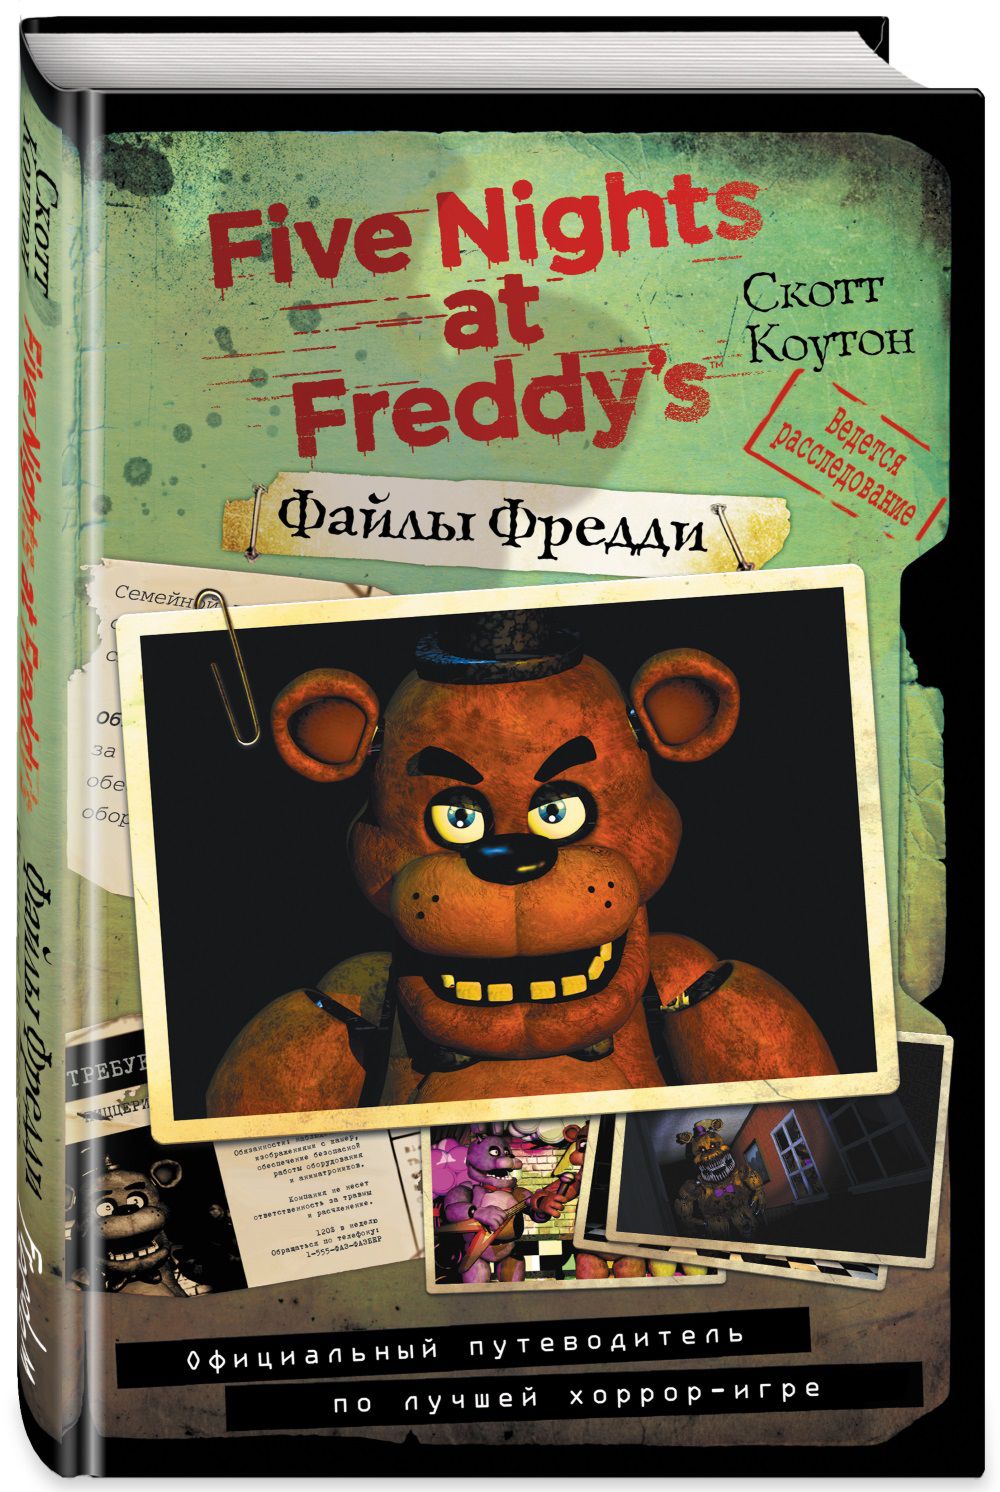 Five Nights At Freddy's: Файлы Фредди – Официальный путеводитель по лучшей хоррор-игре от 1С Интерес